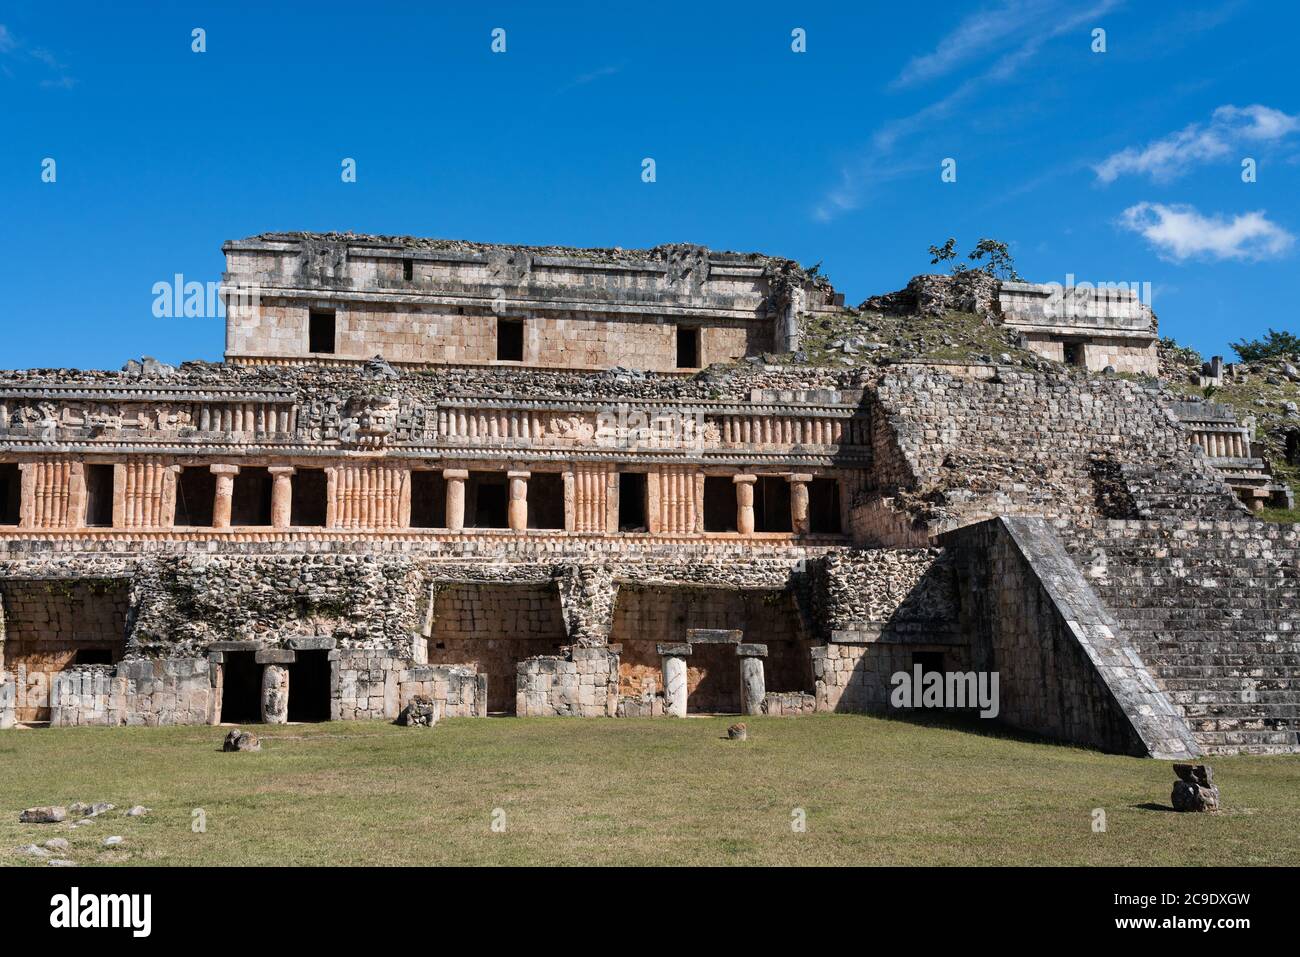 Les ruines de la ville maya de Sayil font partie du Centre du patrimoine mondial de l'UNESCO de la ville préhispanique d'Uxmal, à Yucatan, au Mexique. Banque D'Images